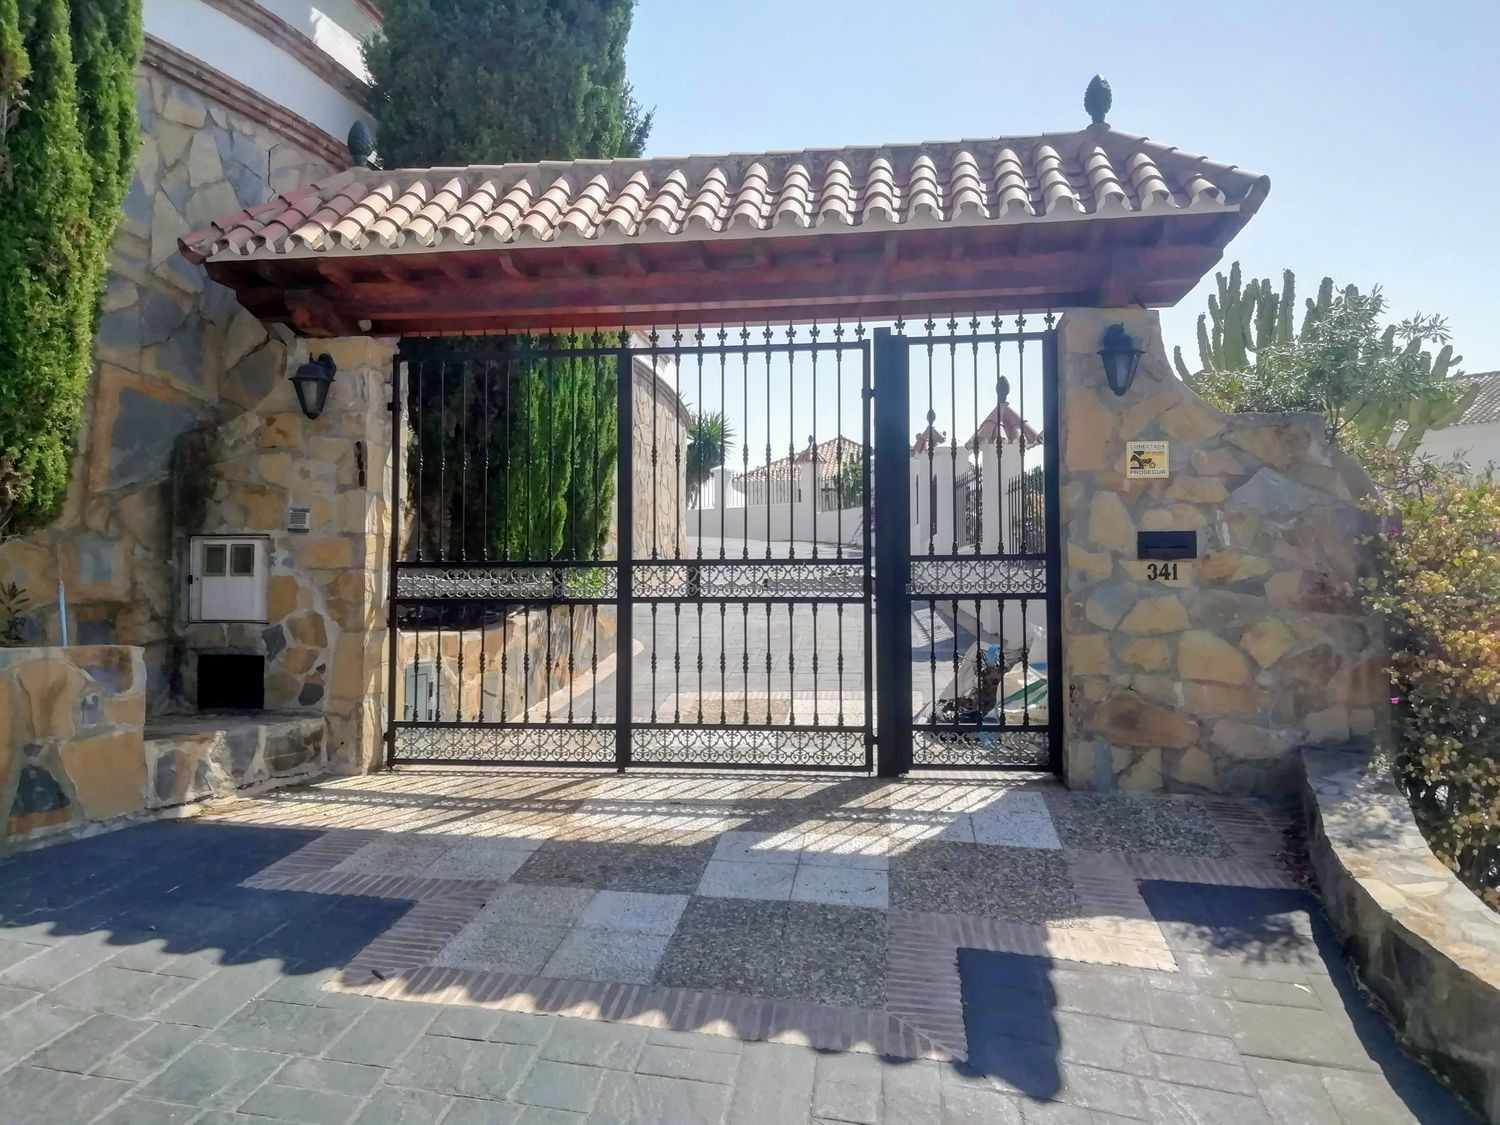 Villa for sale in El Paraiso, Estepona